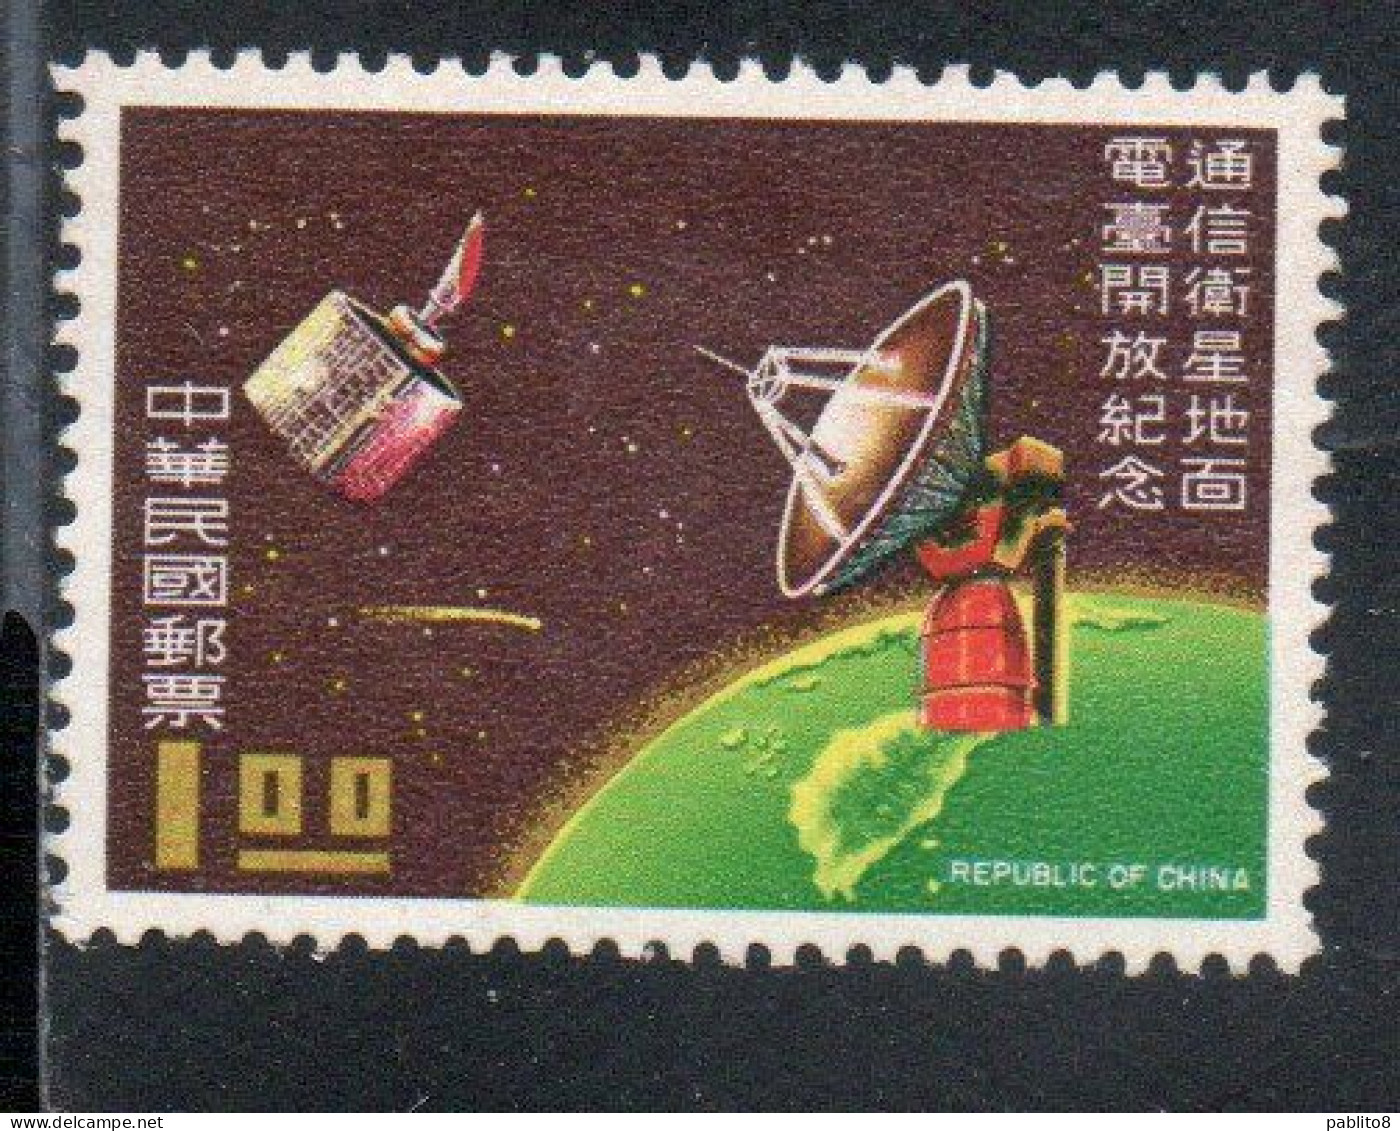 CHINA REPUBLIC CINA TAIWAN FORMOSA 1969 SPACE COMMUNICATION SATELLITE EARTH STATION AT CHIN-SHAN-LI 1$ MNH - Neufs